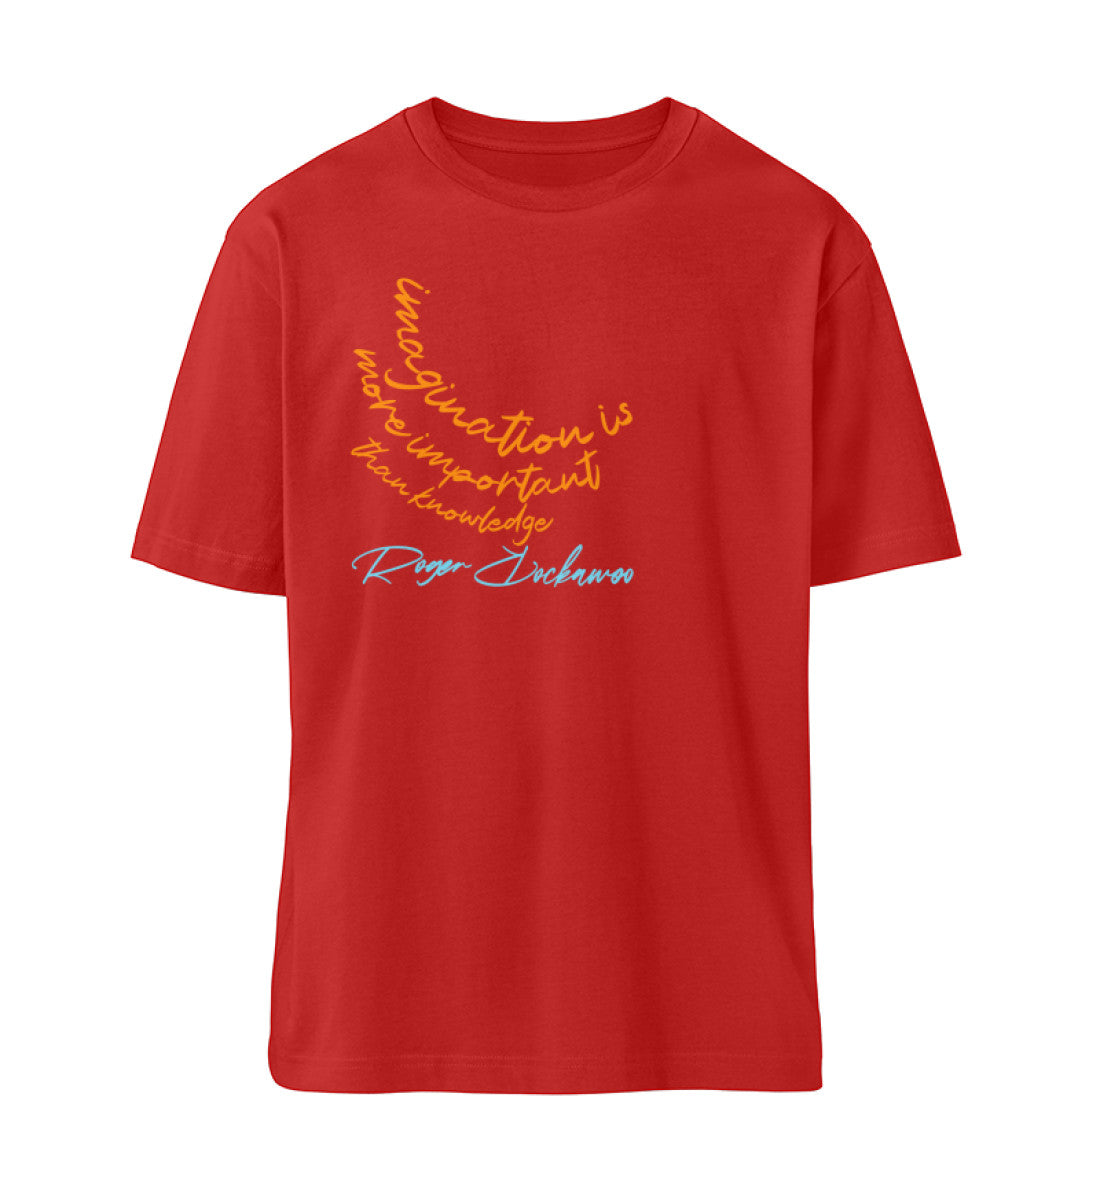 Rotes T-Shirt Unisex Relaxed Fit für Frauen und Männer bedruckt mit dem Design der Roger Rockawoo Kollektion is more important than knowledge